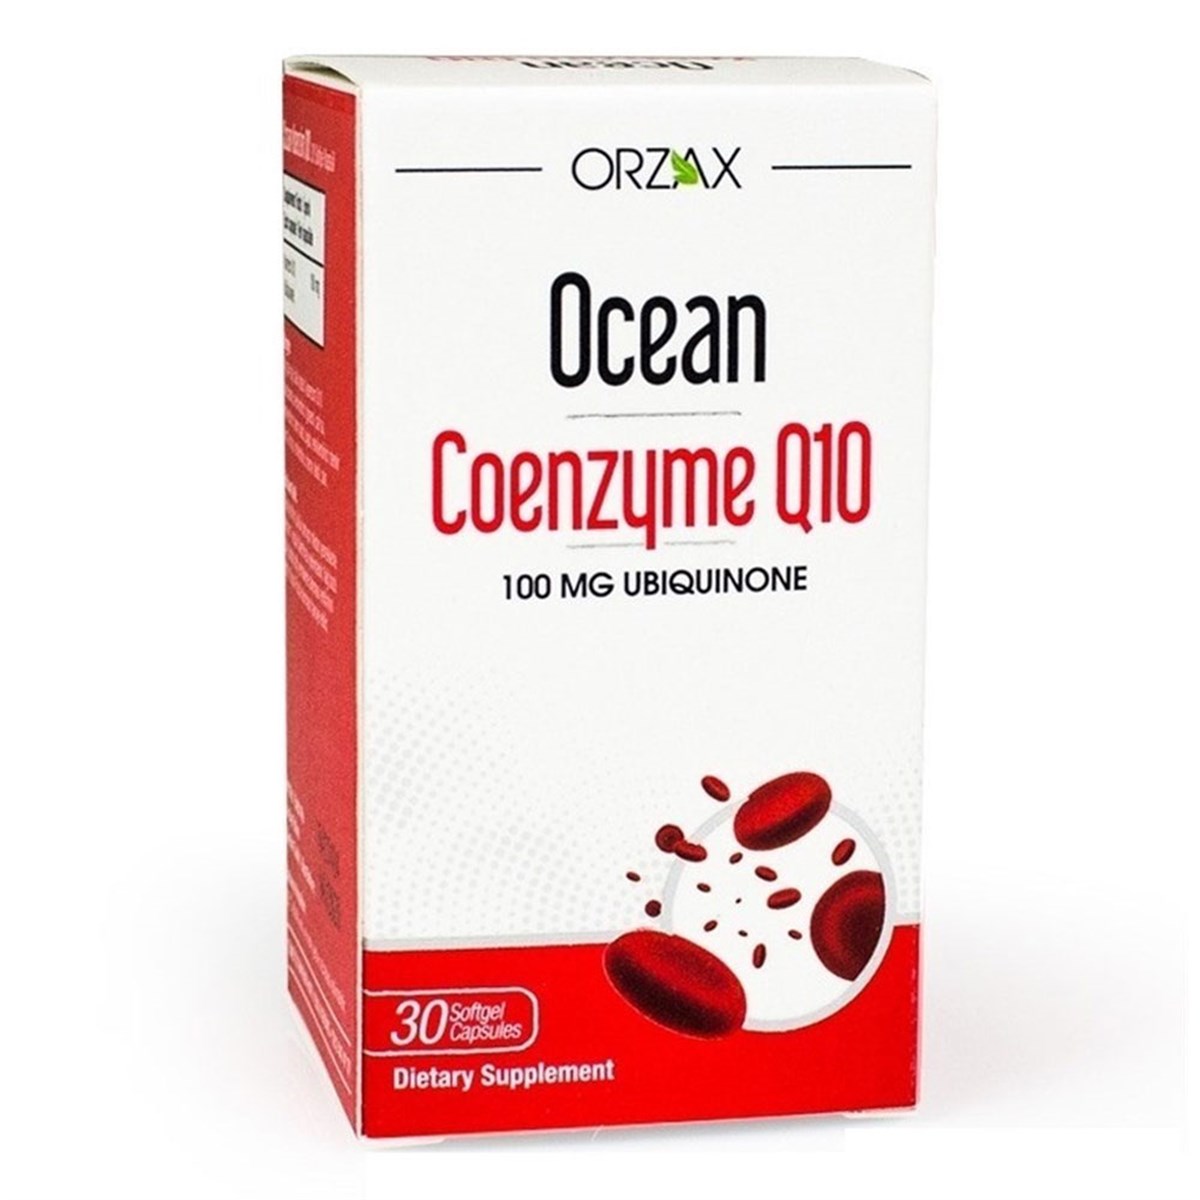 Ocean Koenzim Q10